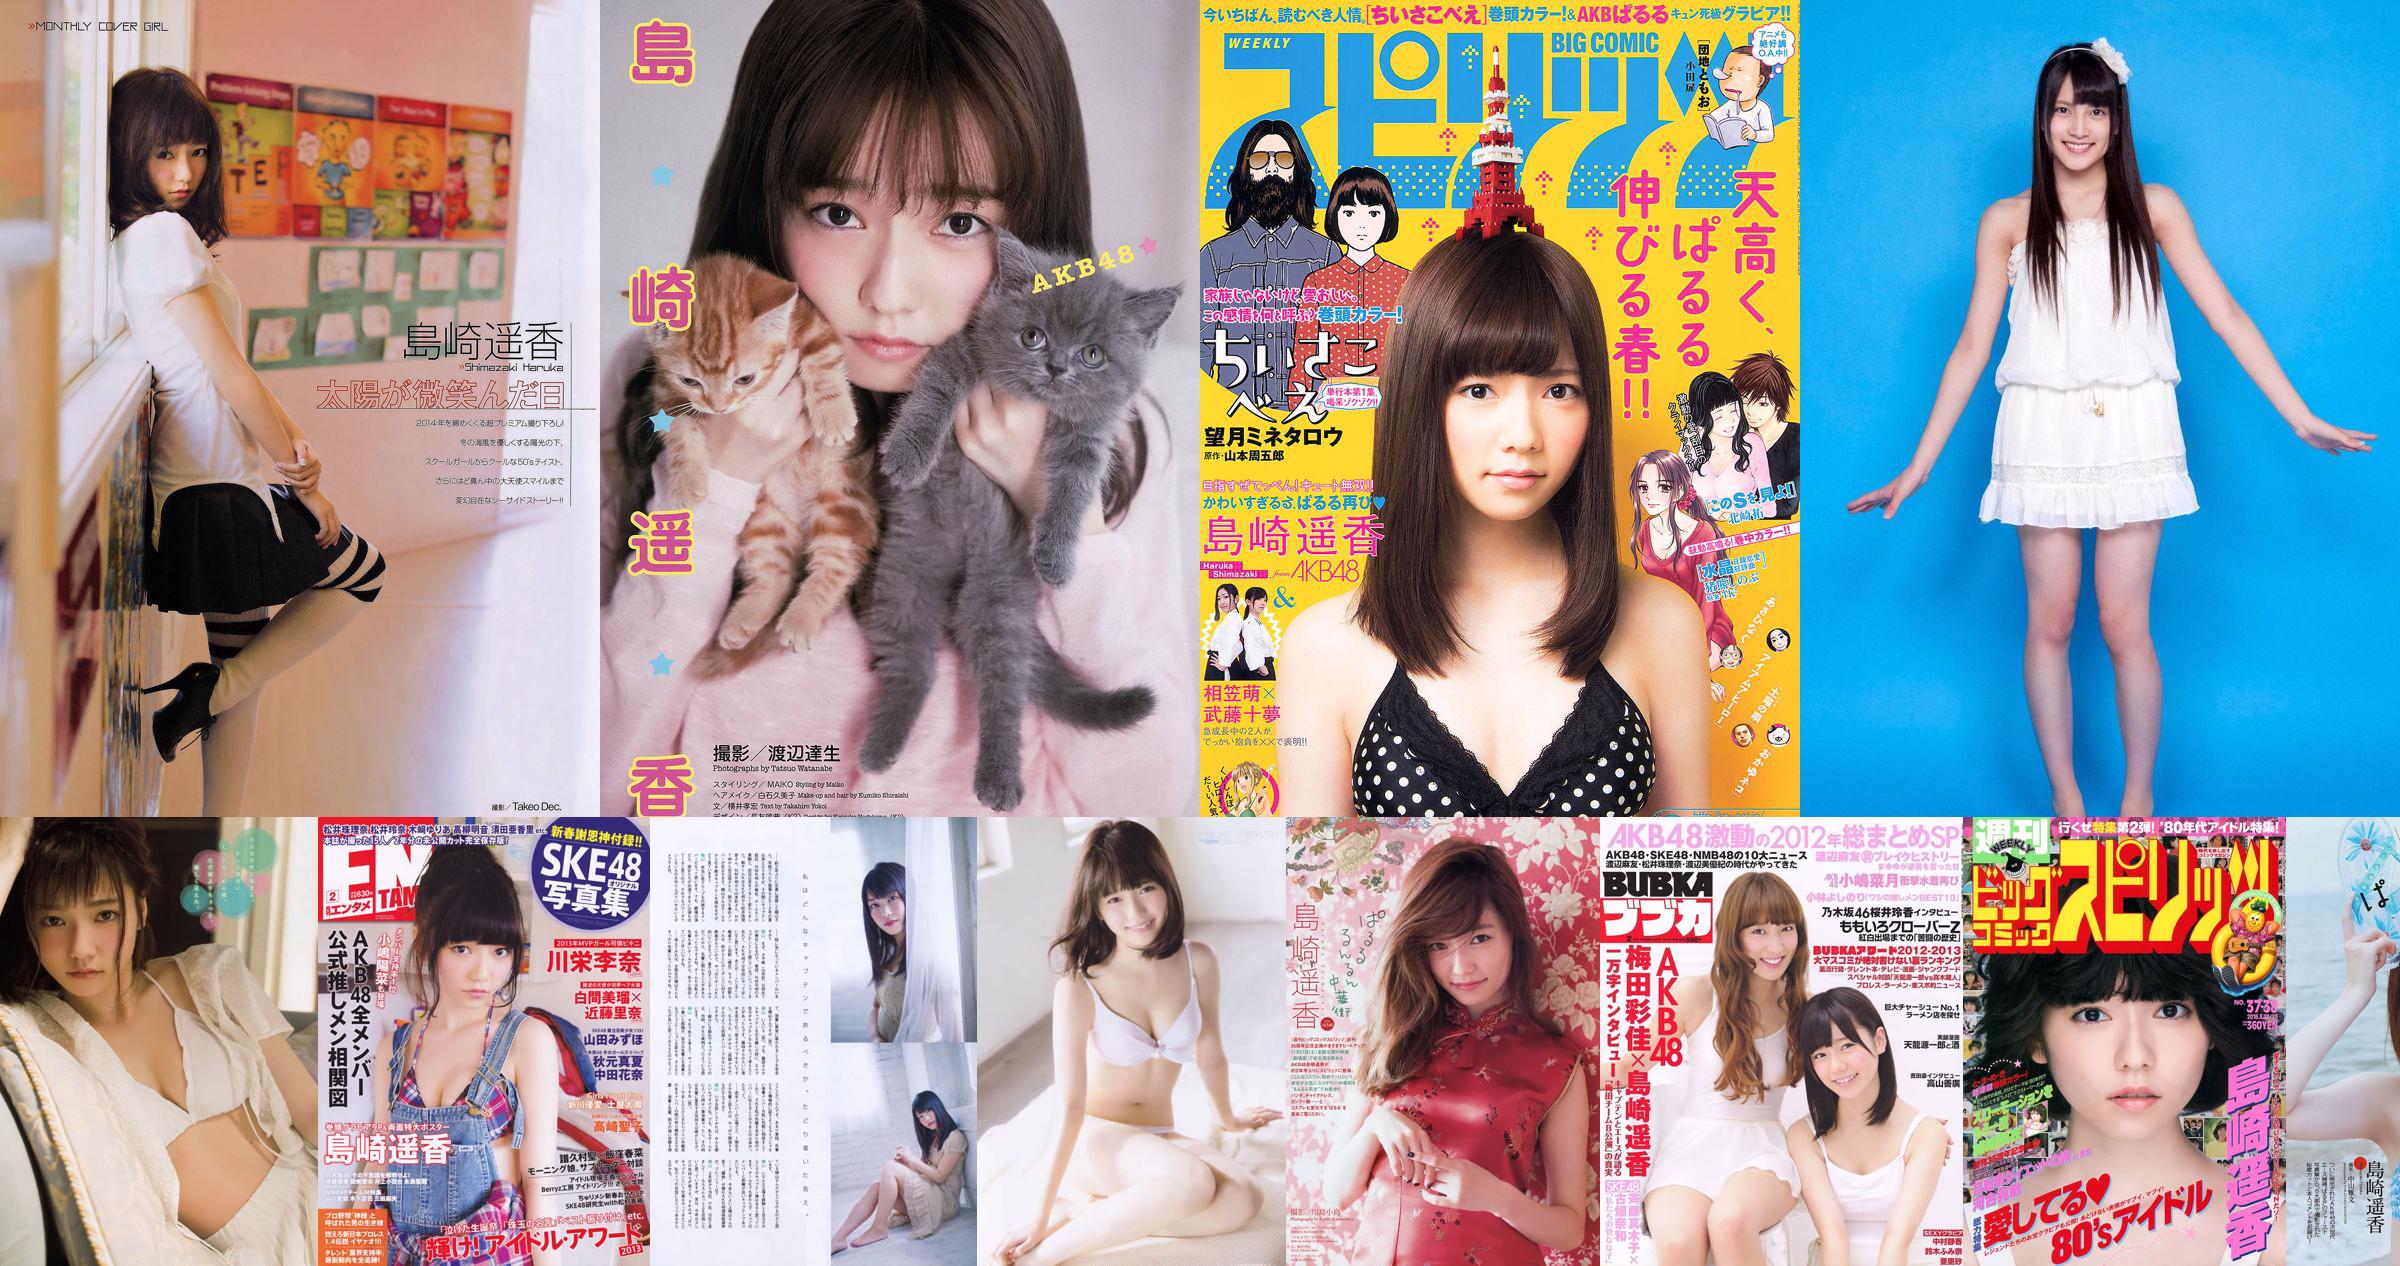 시마 자키 하루카 / 이리 야마 안나 "AKB48 넥스트 가르 즈 第 3 弾"[YS Web] Vol.396 No.c81c9e 페이지 22